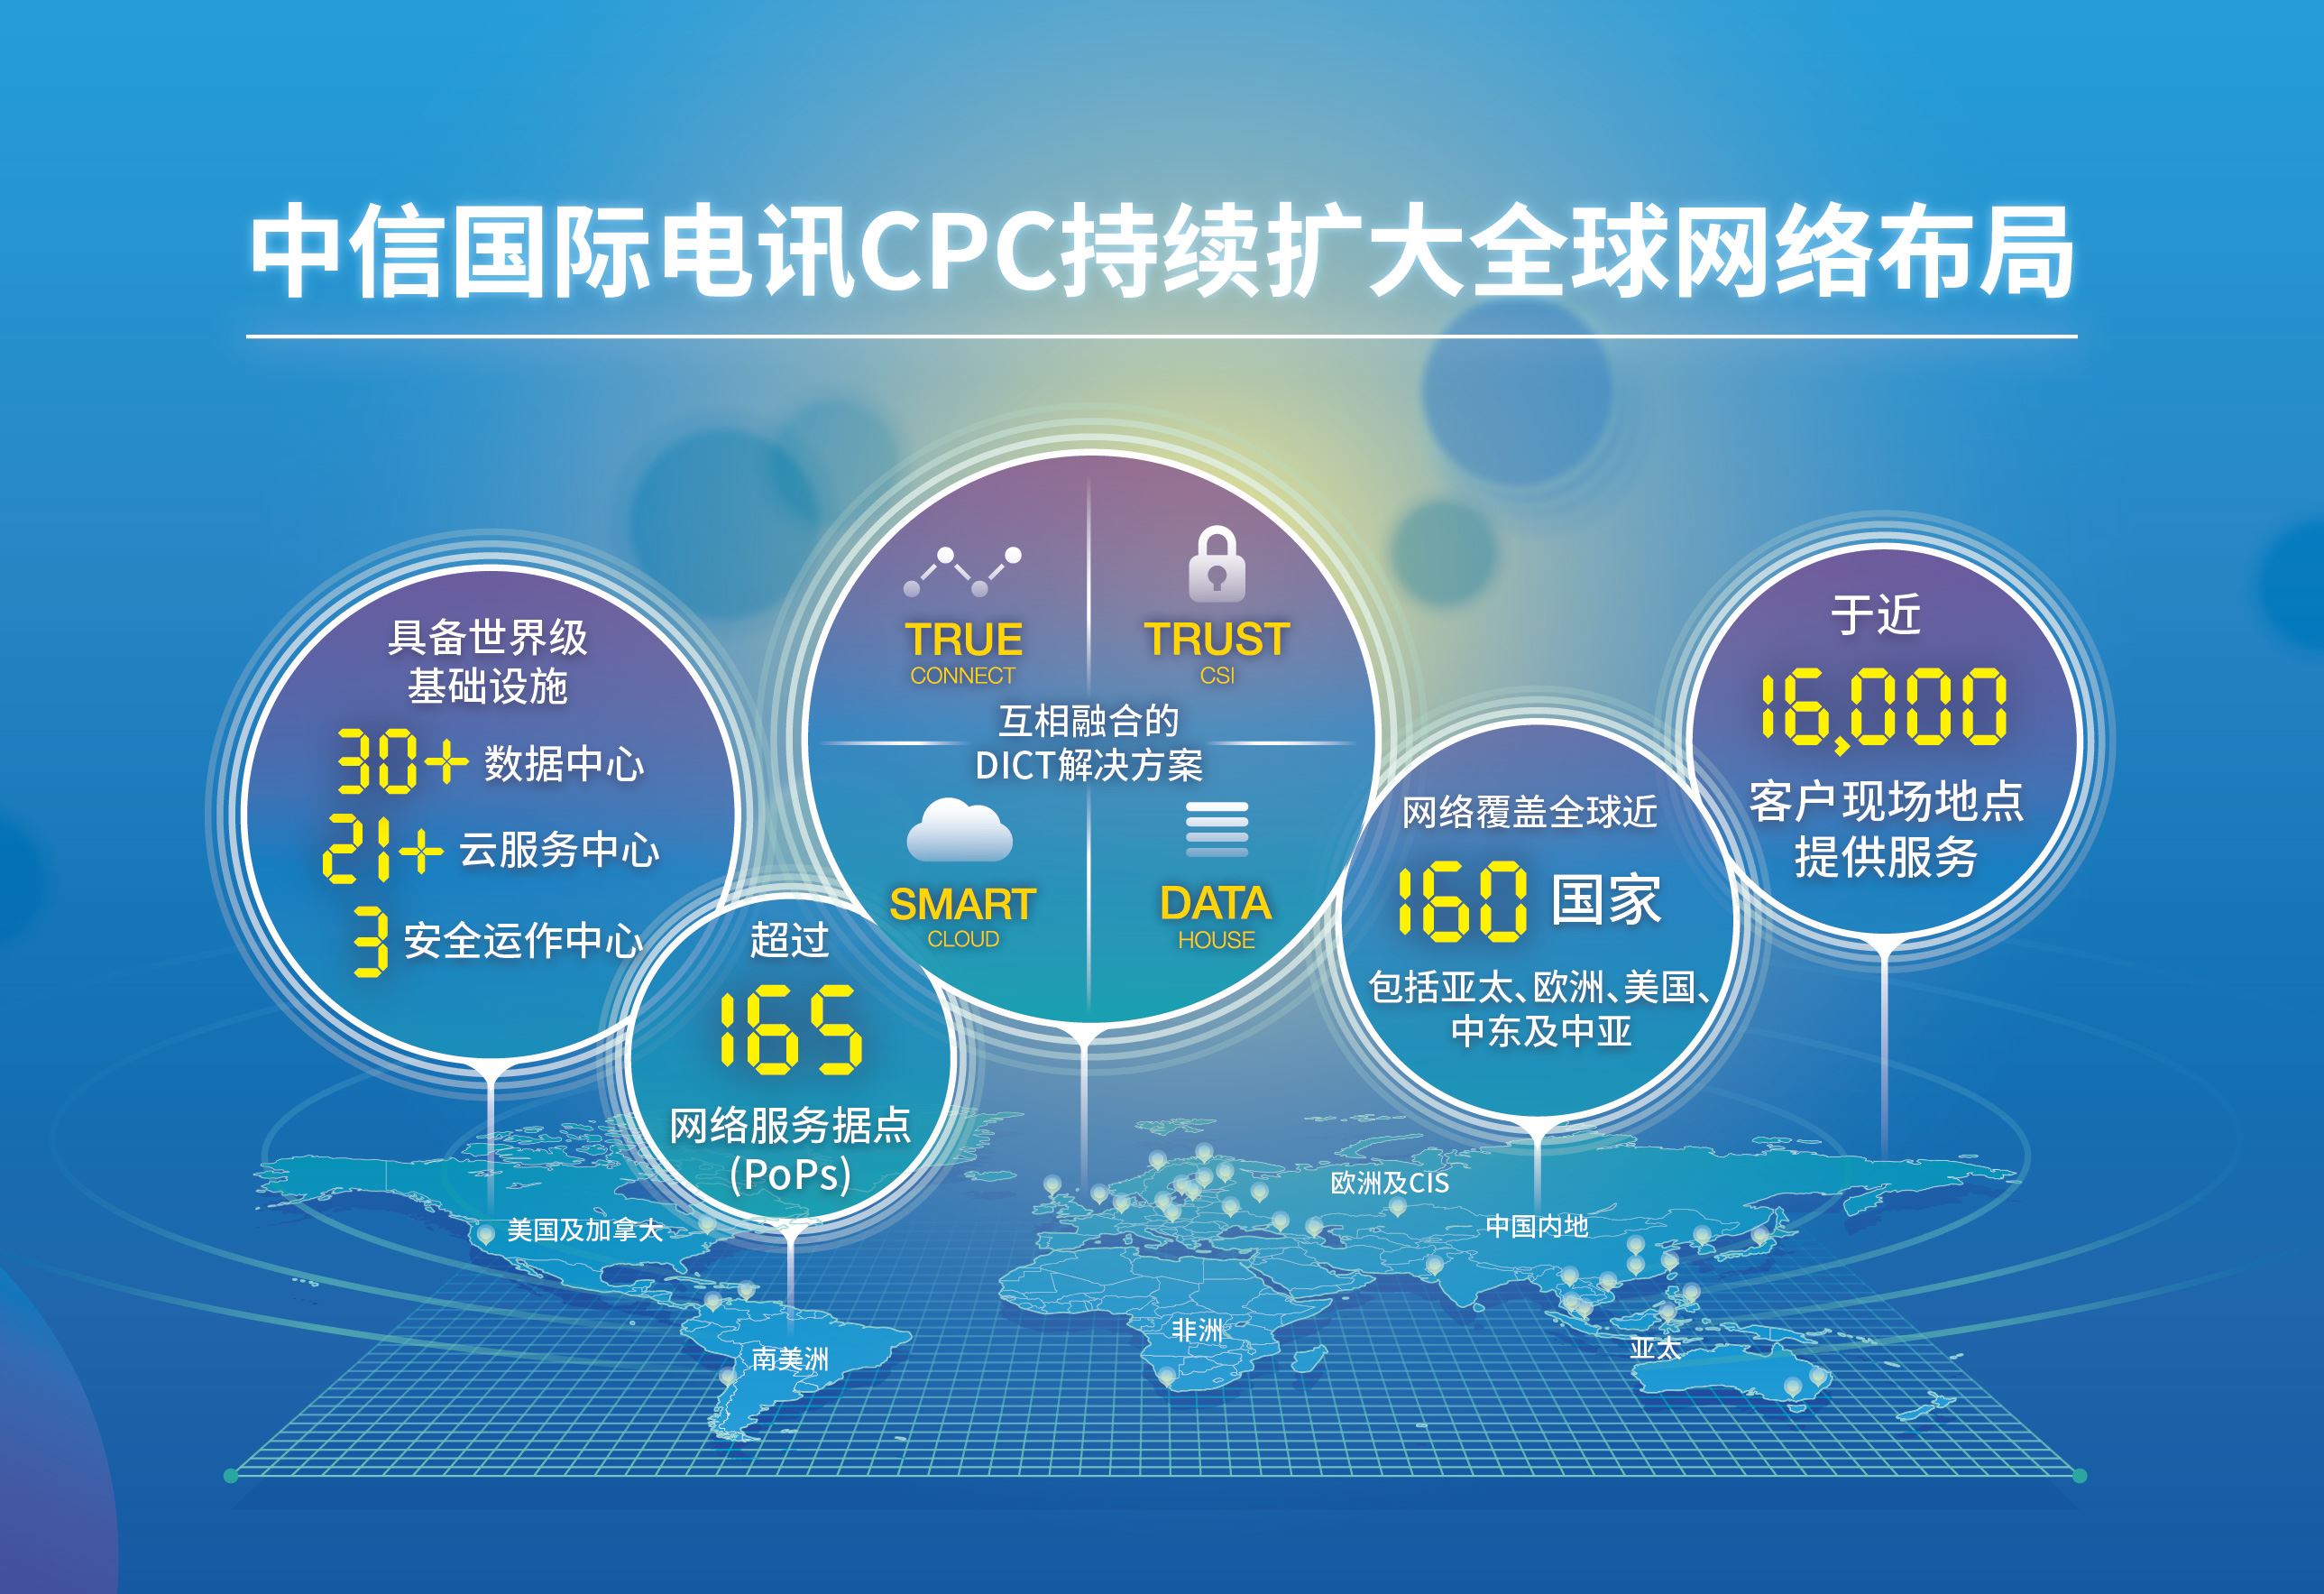 中信国际电讯CPC持续扩大全球网络布局
增设印度、巴西据点，完善金砖五国资源覆盖


